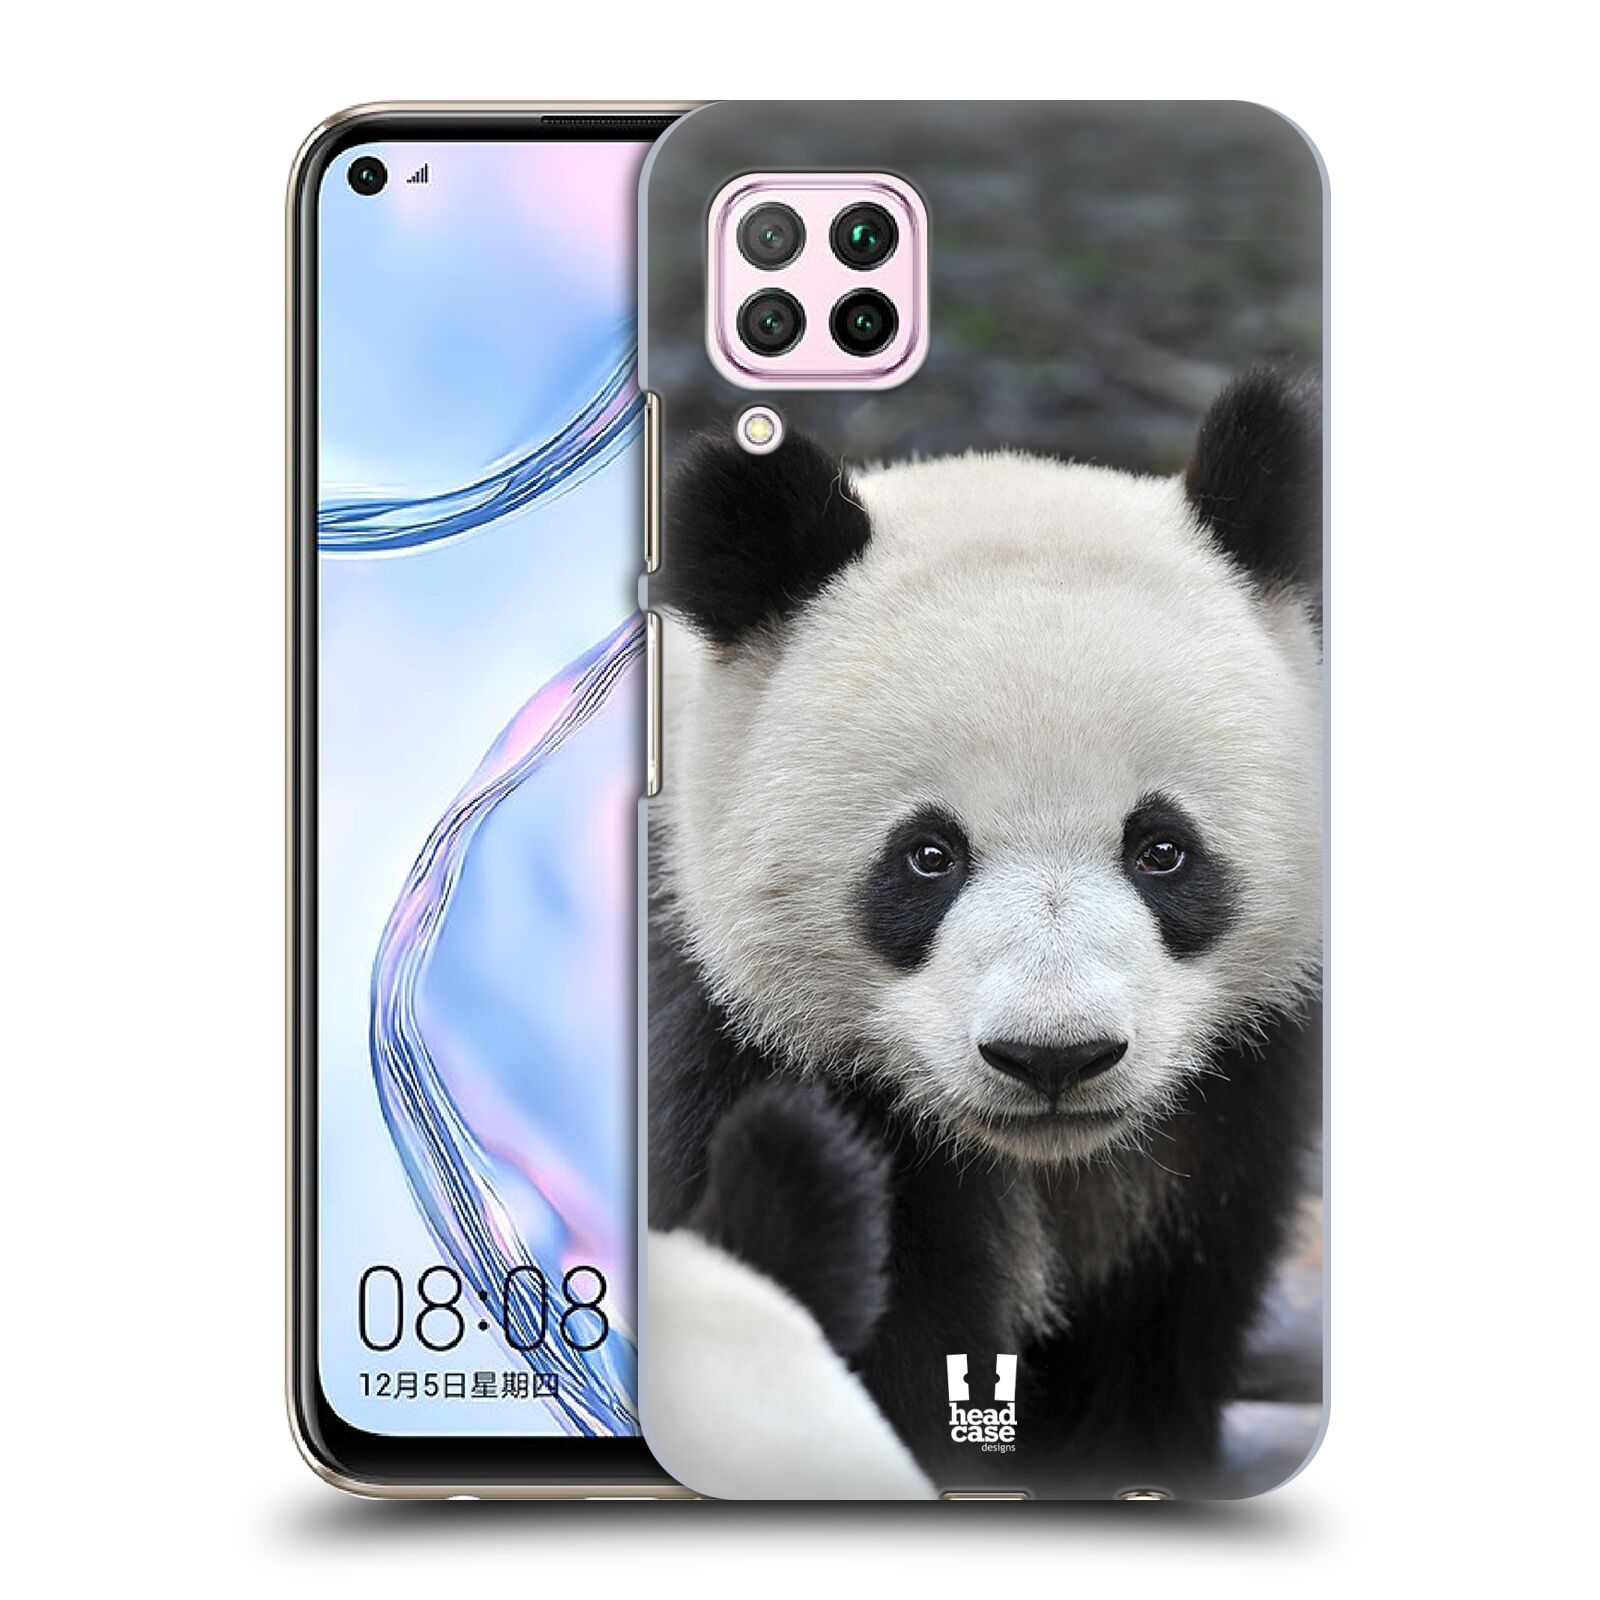 Zadní obal pro mobil Huawei P40 LITE - HEAD CASE - Svět zvířat medvěd panda